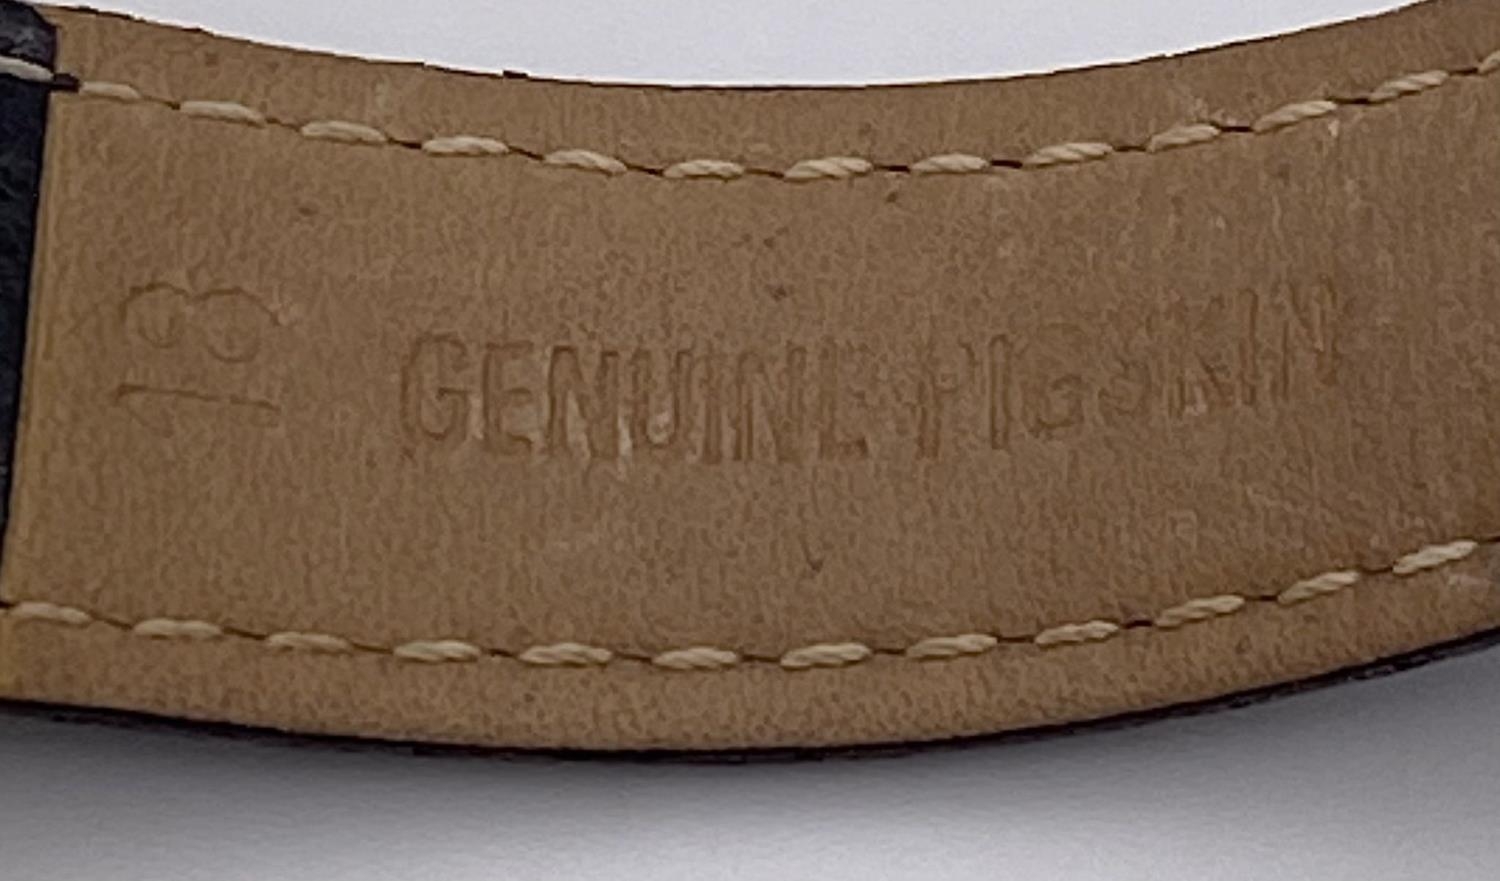 A Vintage Bulova 9K Gold Cased Mechanical Gents Watch. Black leather strap. 9K gold inscribed case - - Image 7 of 8